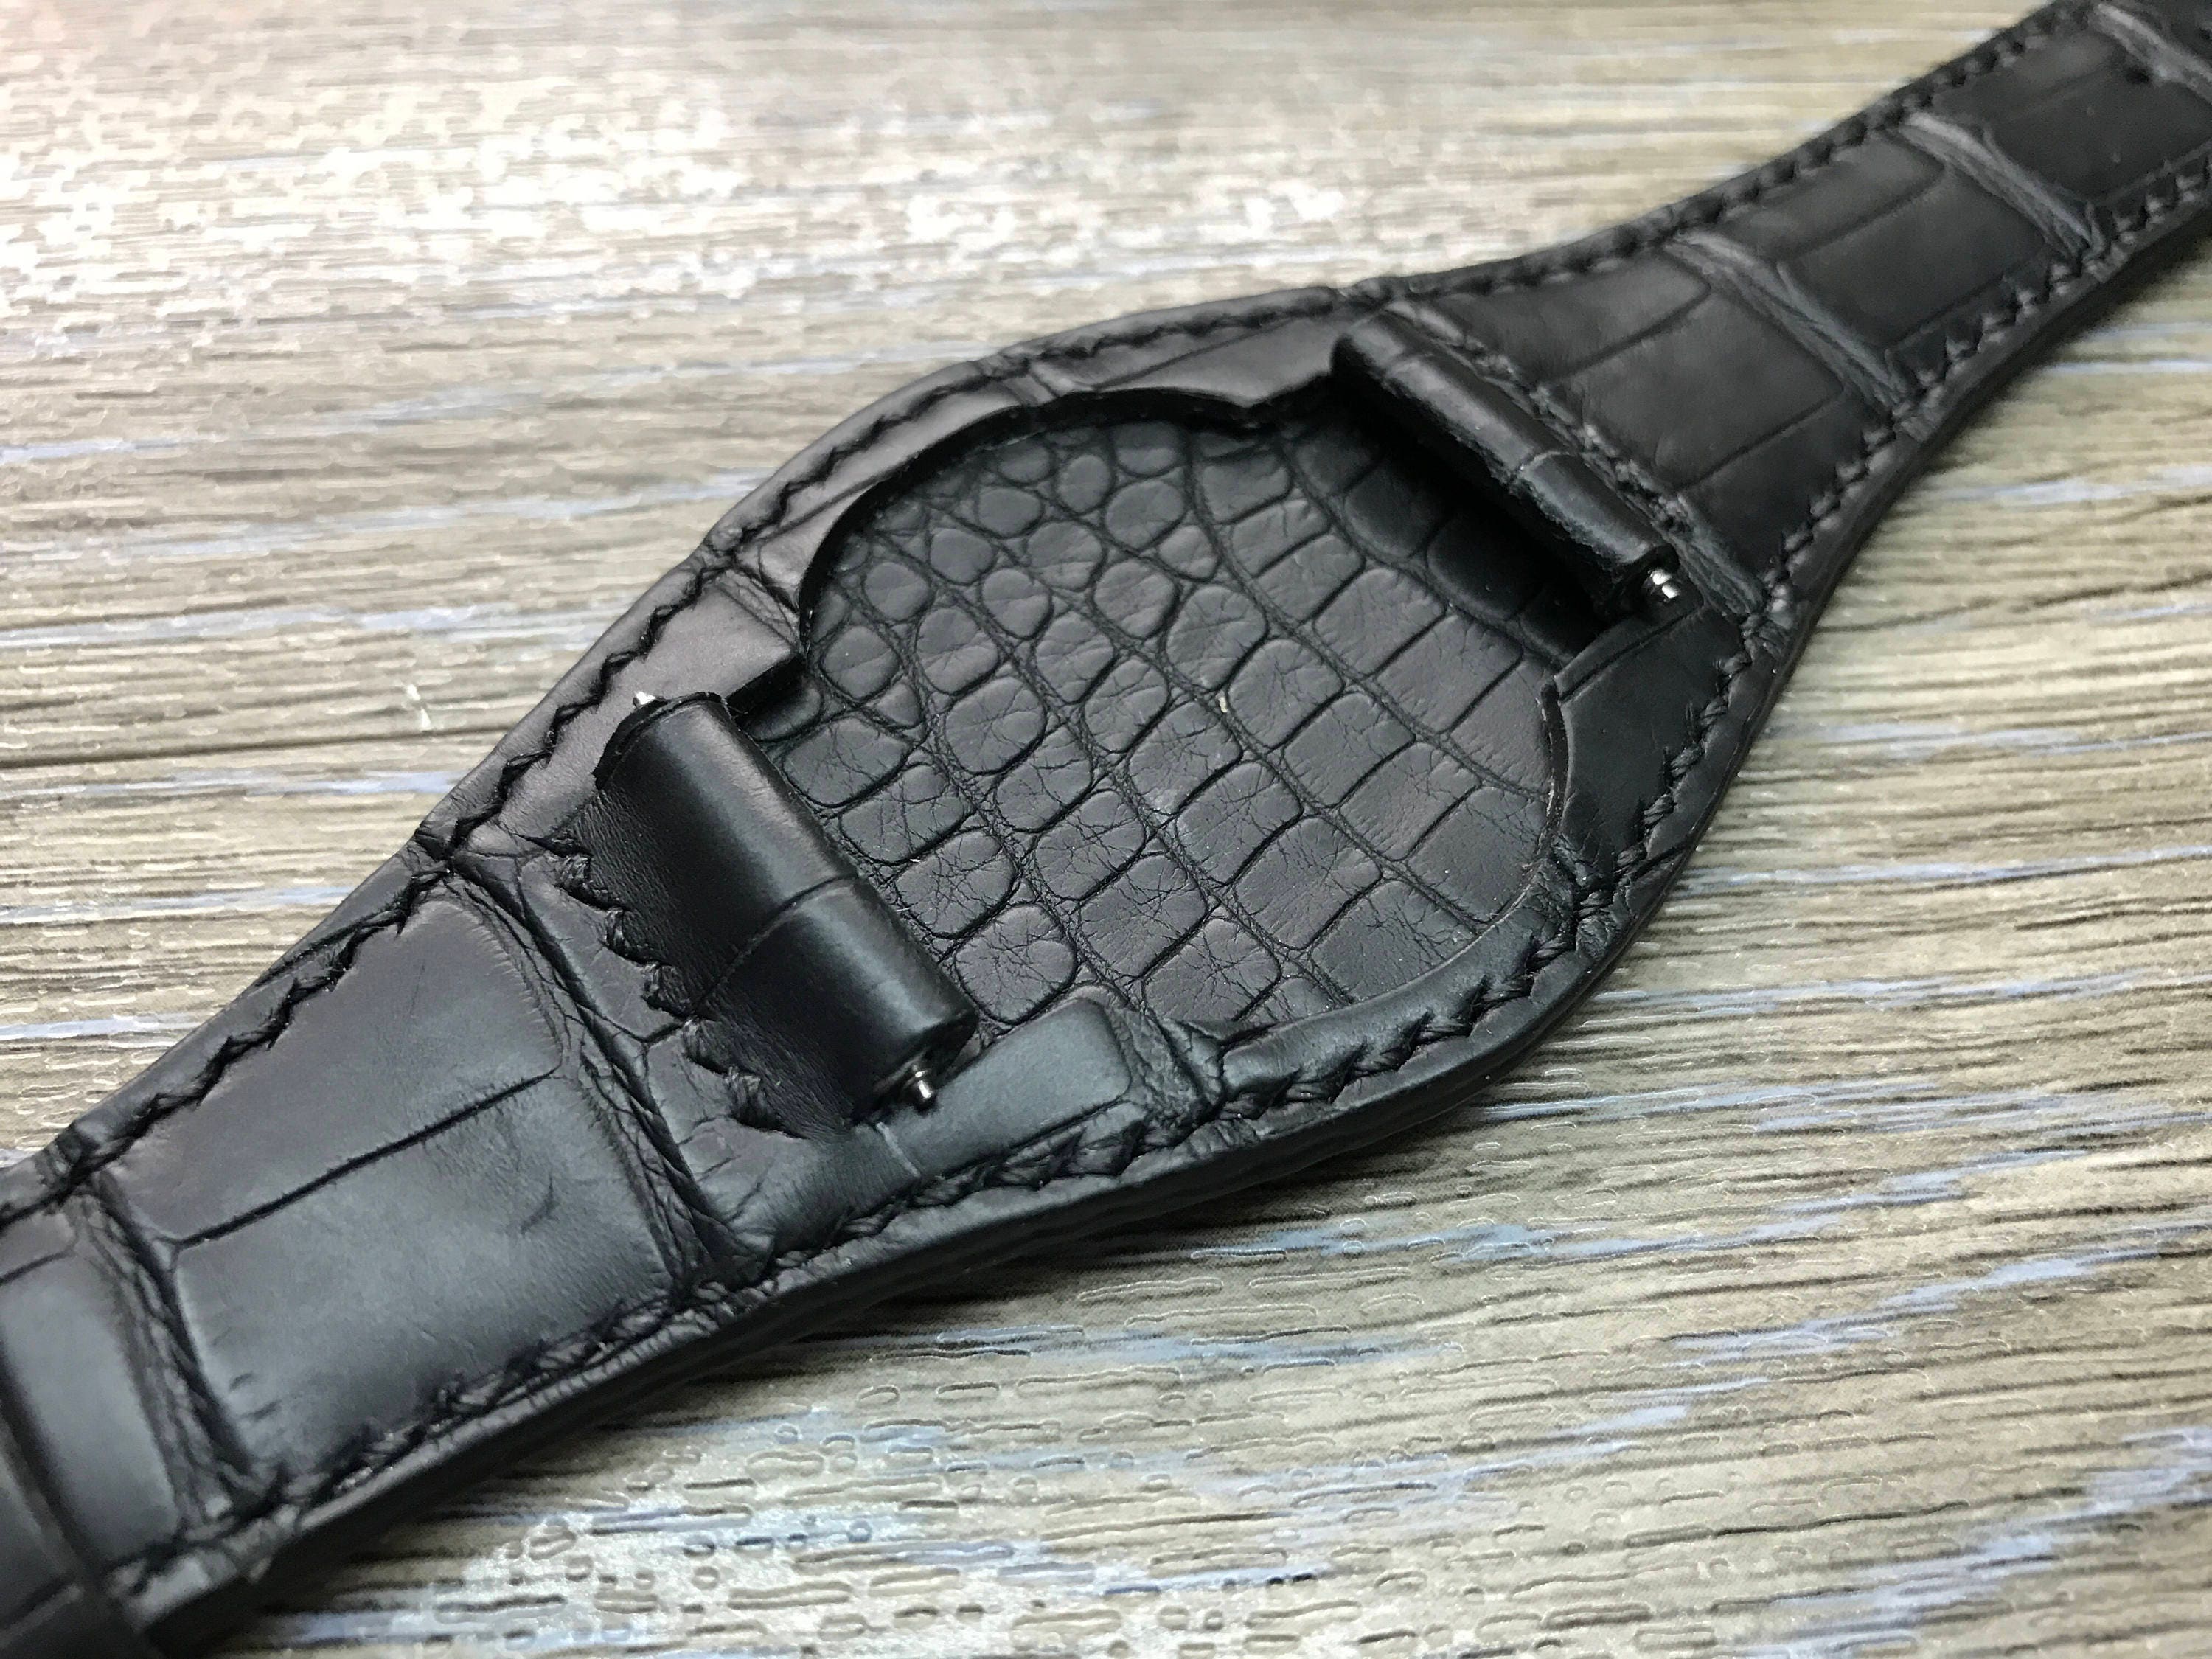 Full Bund Strap Black Genuine Leather Cuff Watch Band Cuff - Etsy